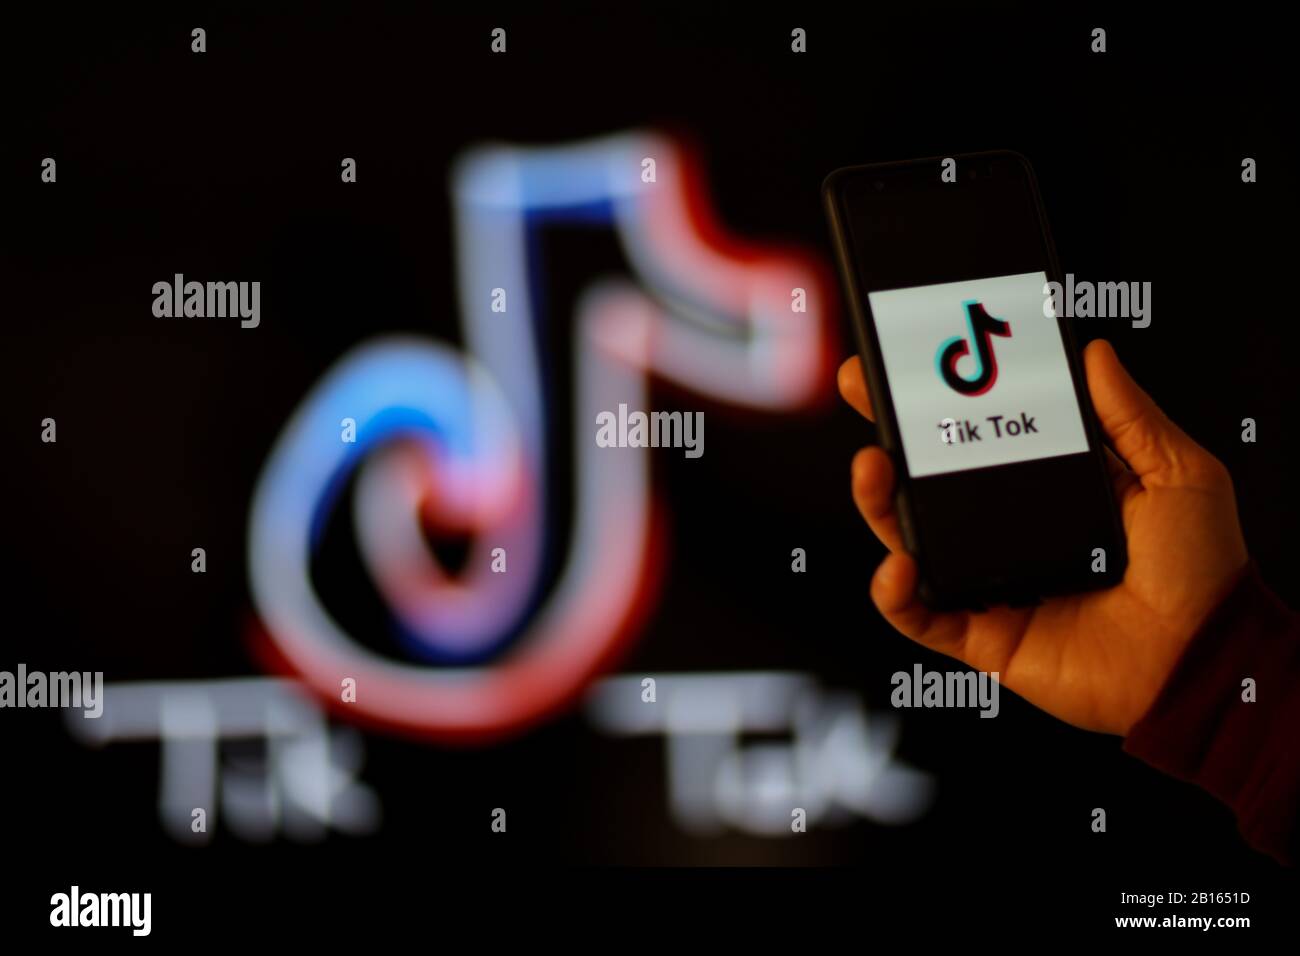 9. Februar 2020: Türkei: In Gaziantep, Türkei, wird auf einem Smartphone eine Social Video App von Tik Tok angezeigt. Die Tik Tok App, die von der chinesischen Firma Bite Dance ins Leben gerufen wurde, wurde 2017 als Video-Sharing-Plattform gestartet (Credit Image: © Muhammad Ata/IMAGESLIVE via ZUMA Wire) Stockfoto